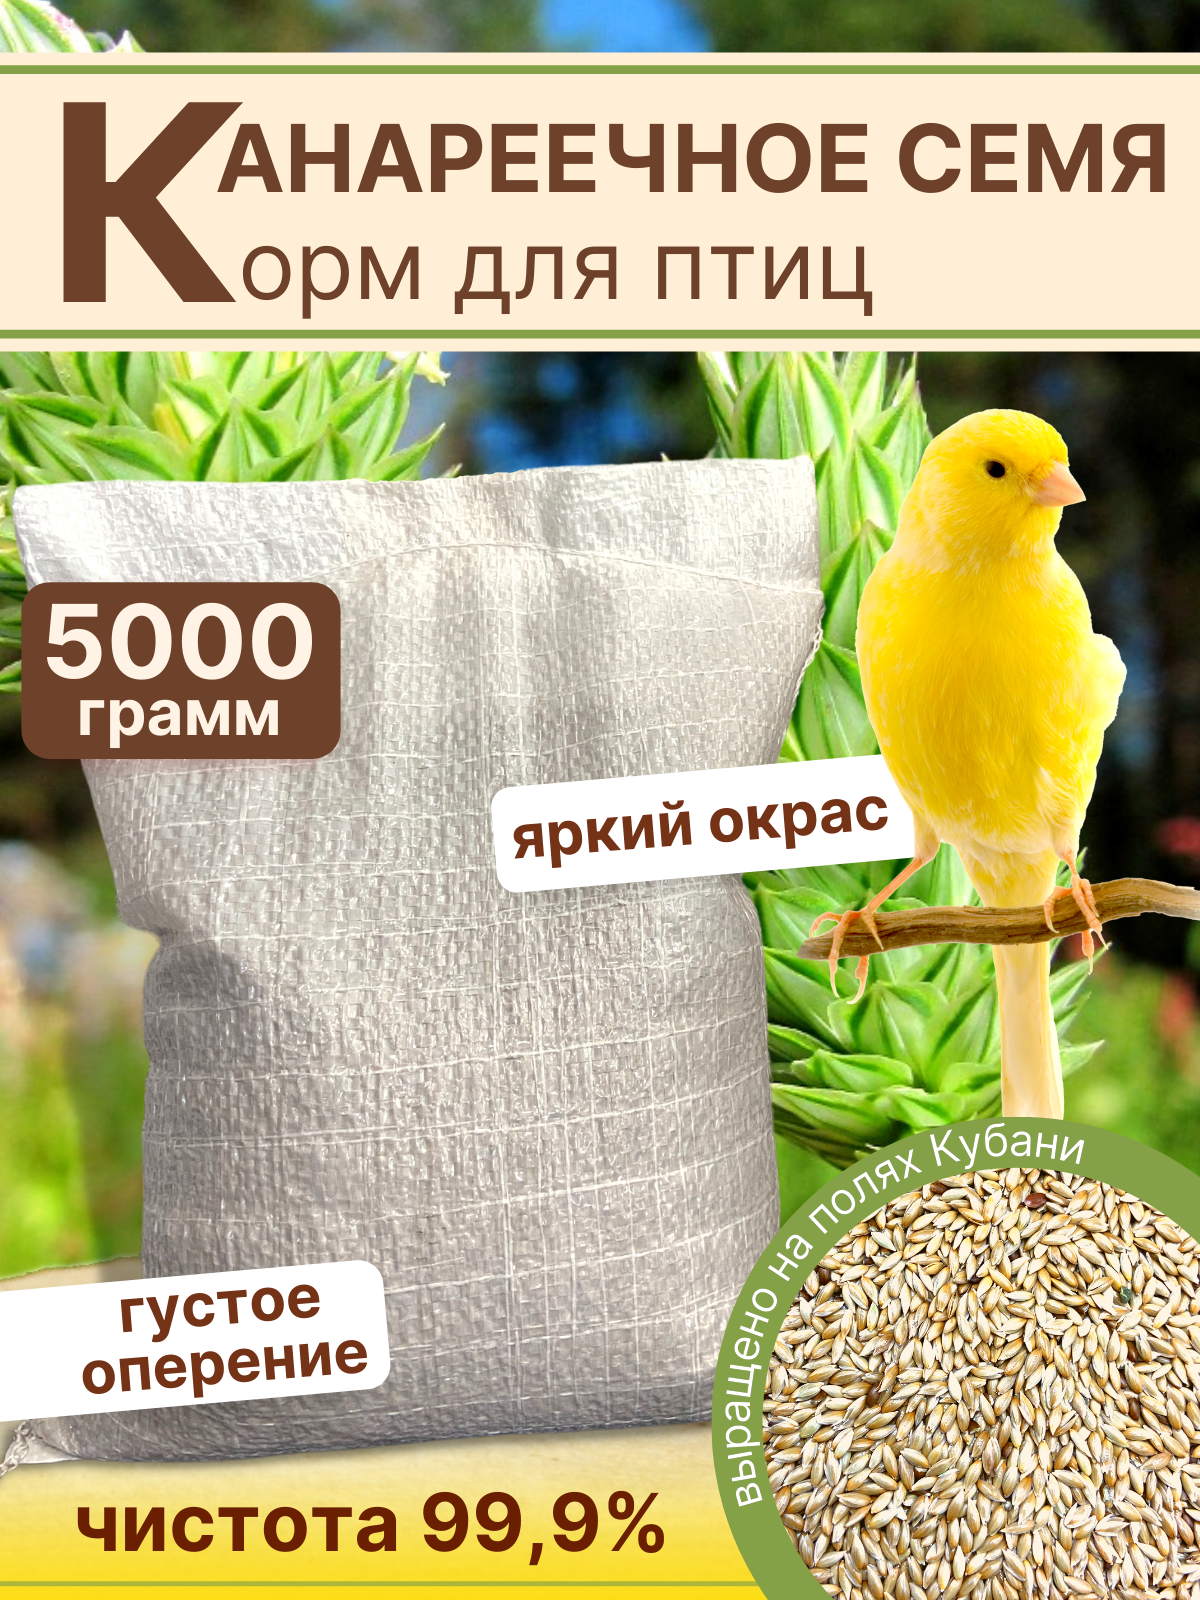 Канареечное семя корм для птиц 1кг